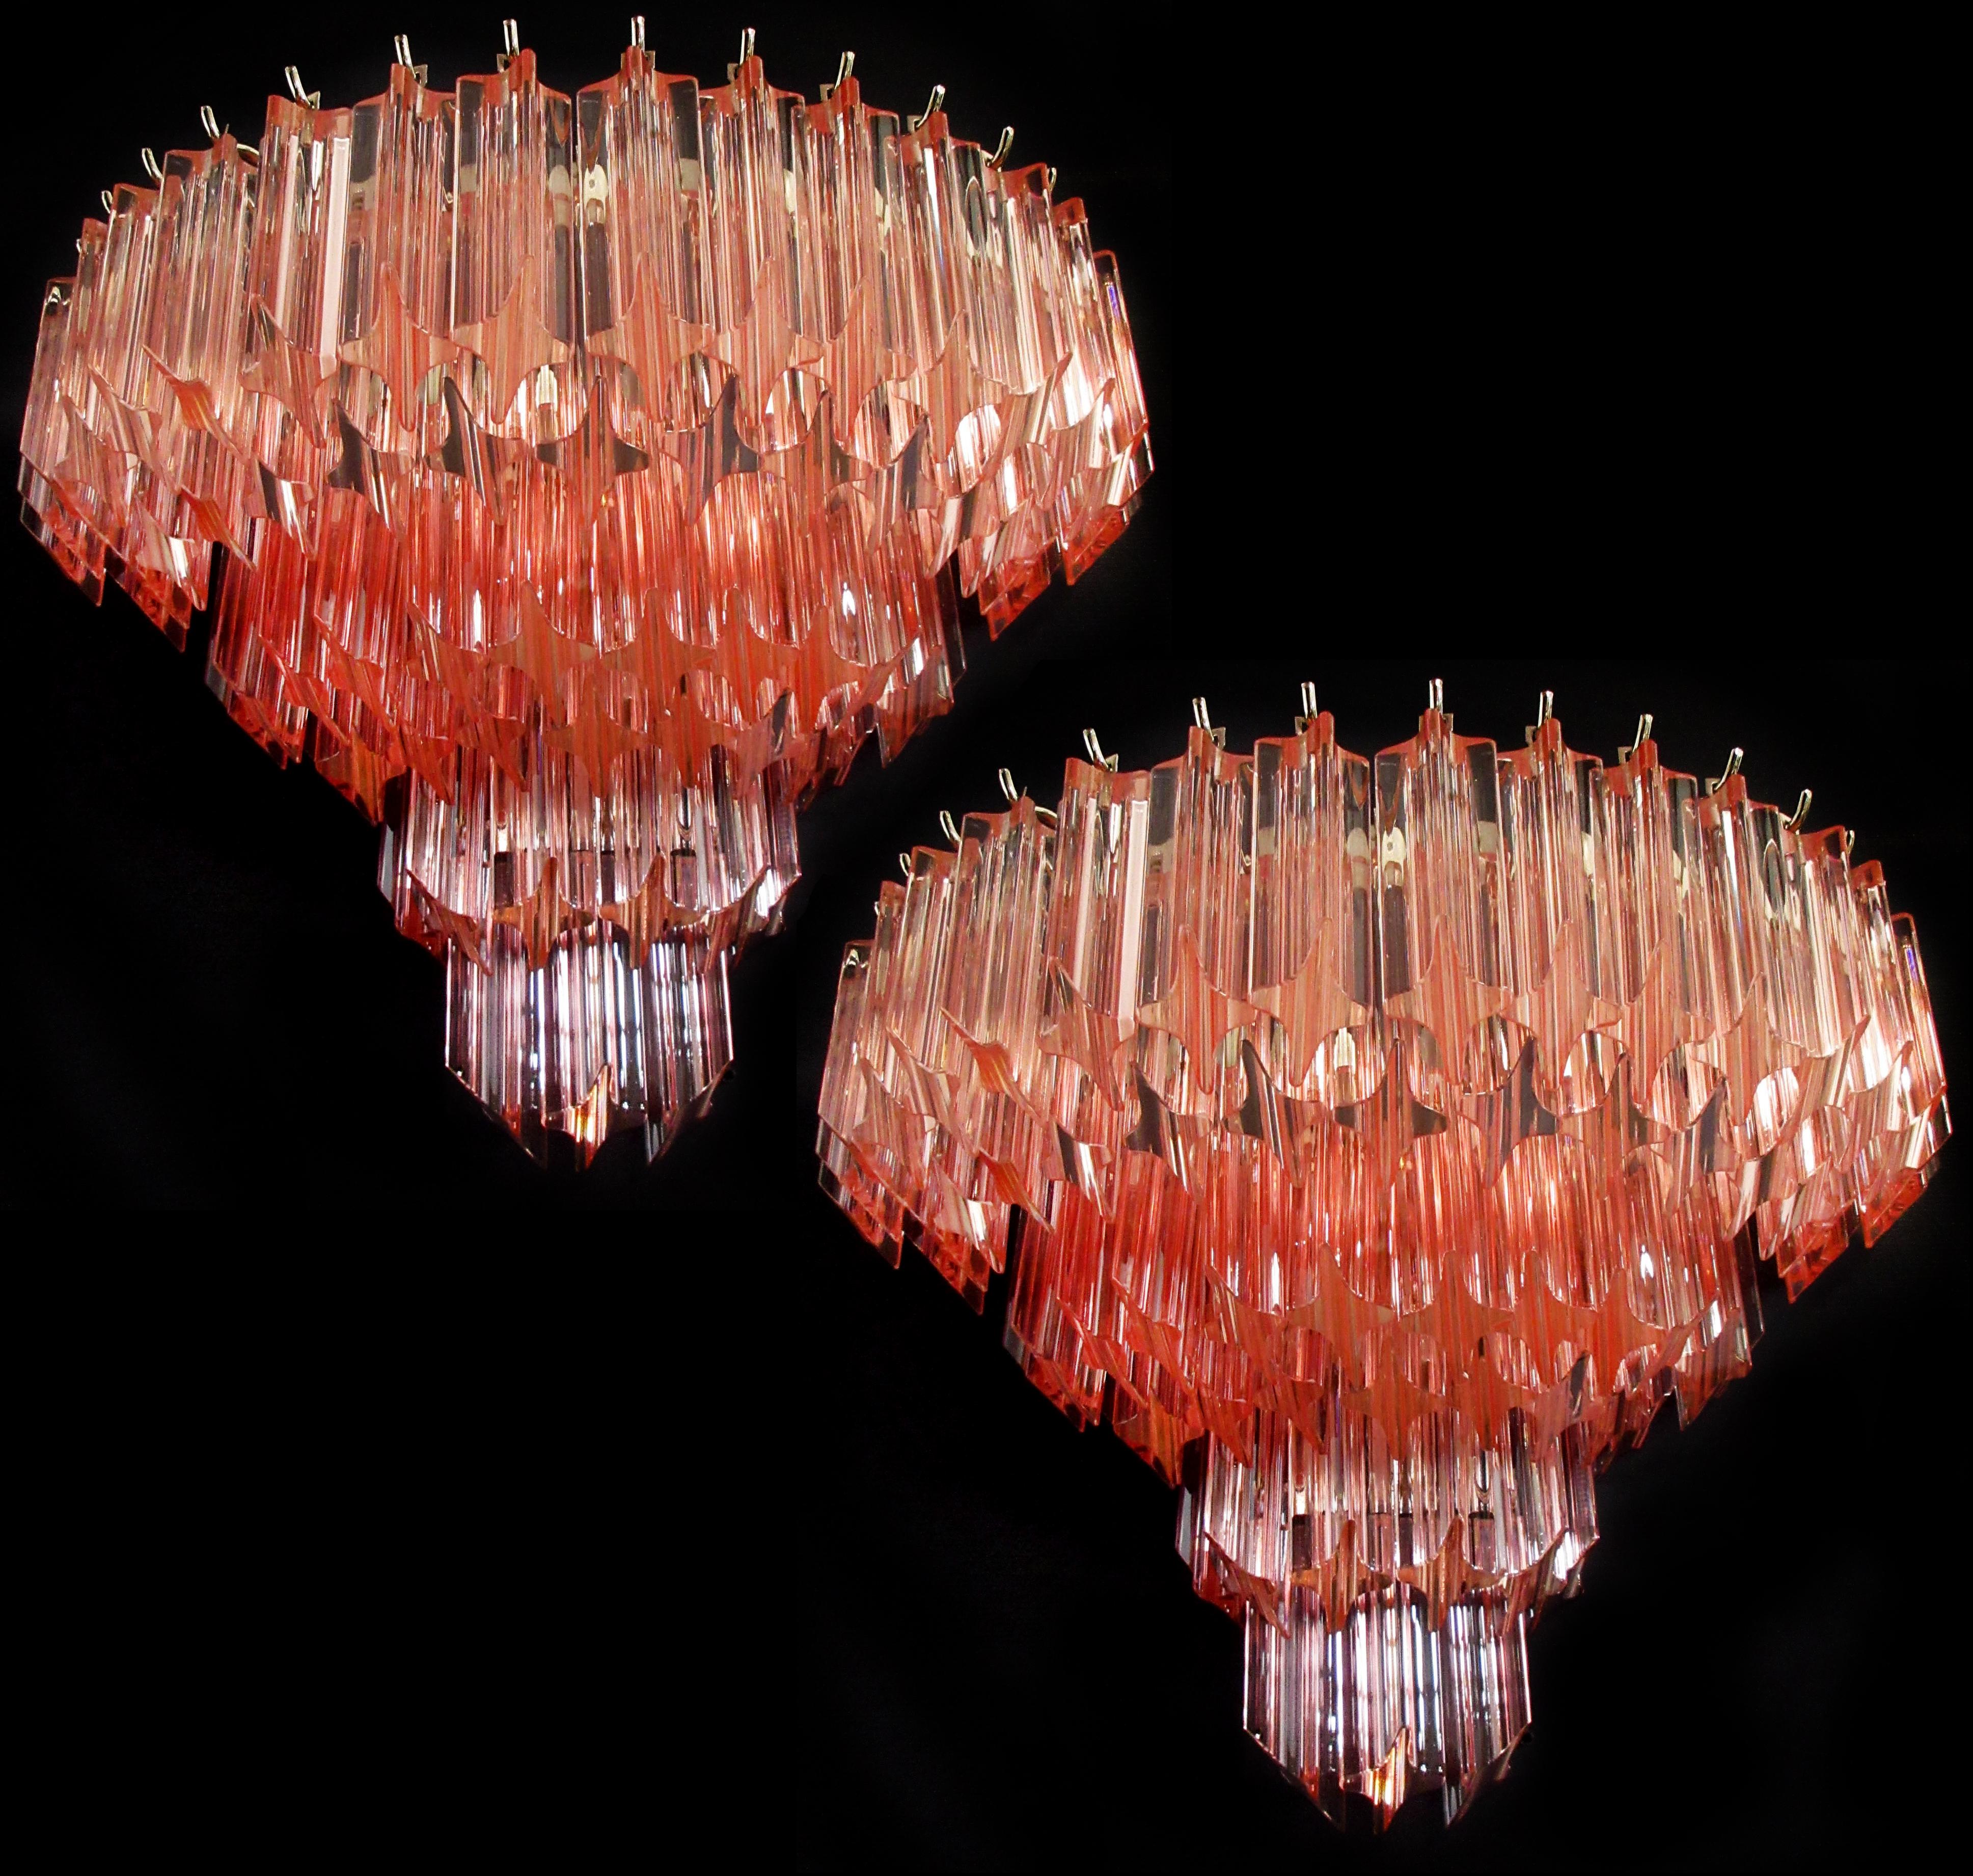 Fantastique paire d'appliques murales vintage de Murano composée de 63 prismes en cristal de Murano (quadriedri) pour chaque applique dans un cadre en métal chromé. Les lunettes sont de couleur rose.
Période : 1980s
Dimensions : 13,60 pouces de